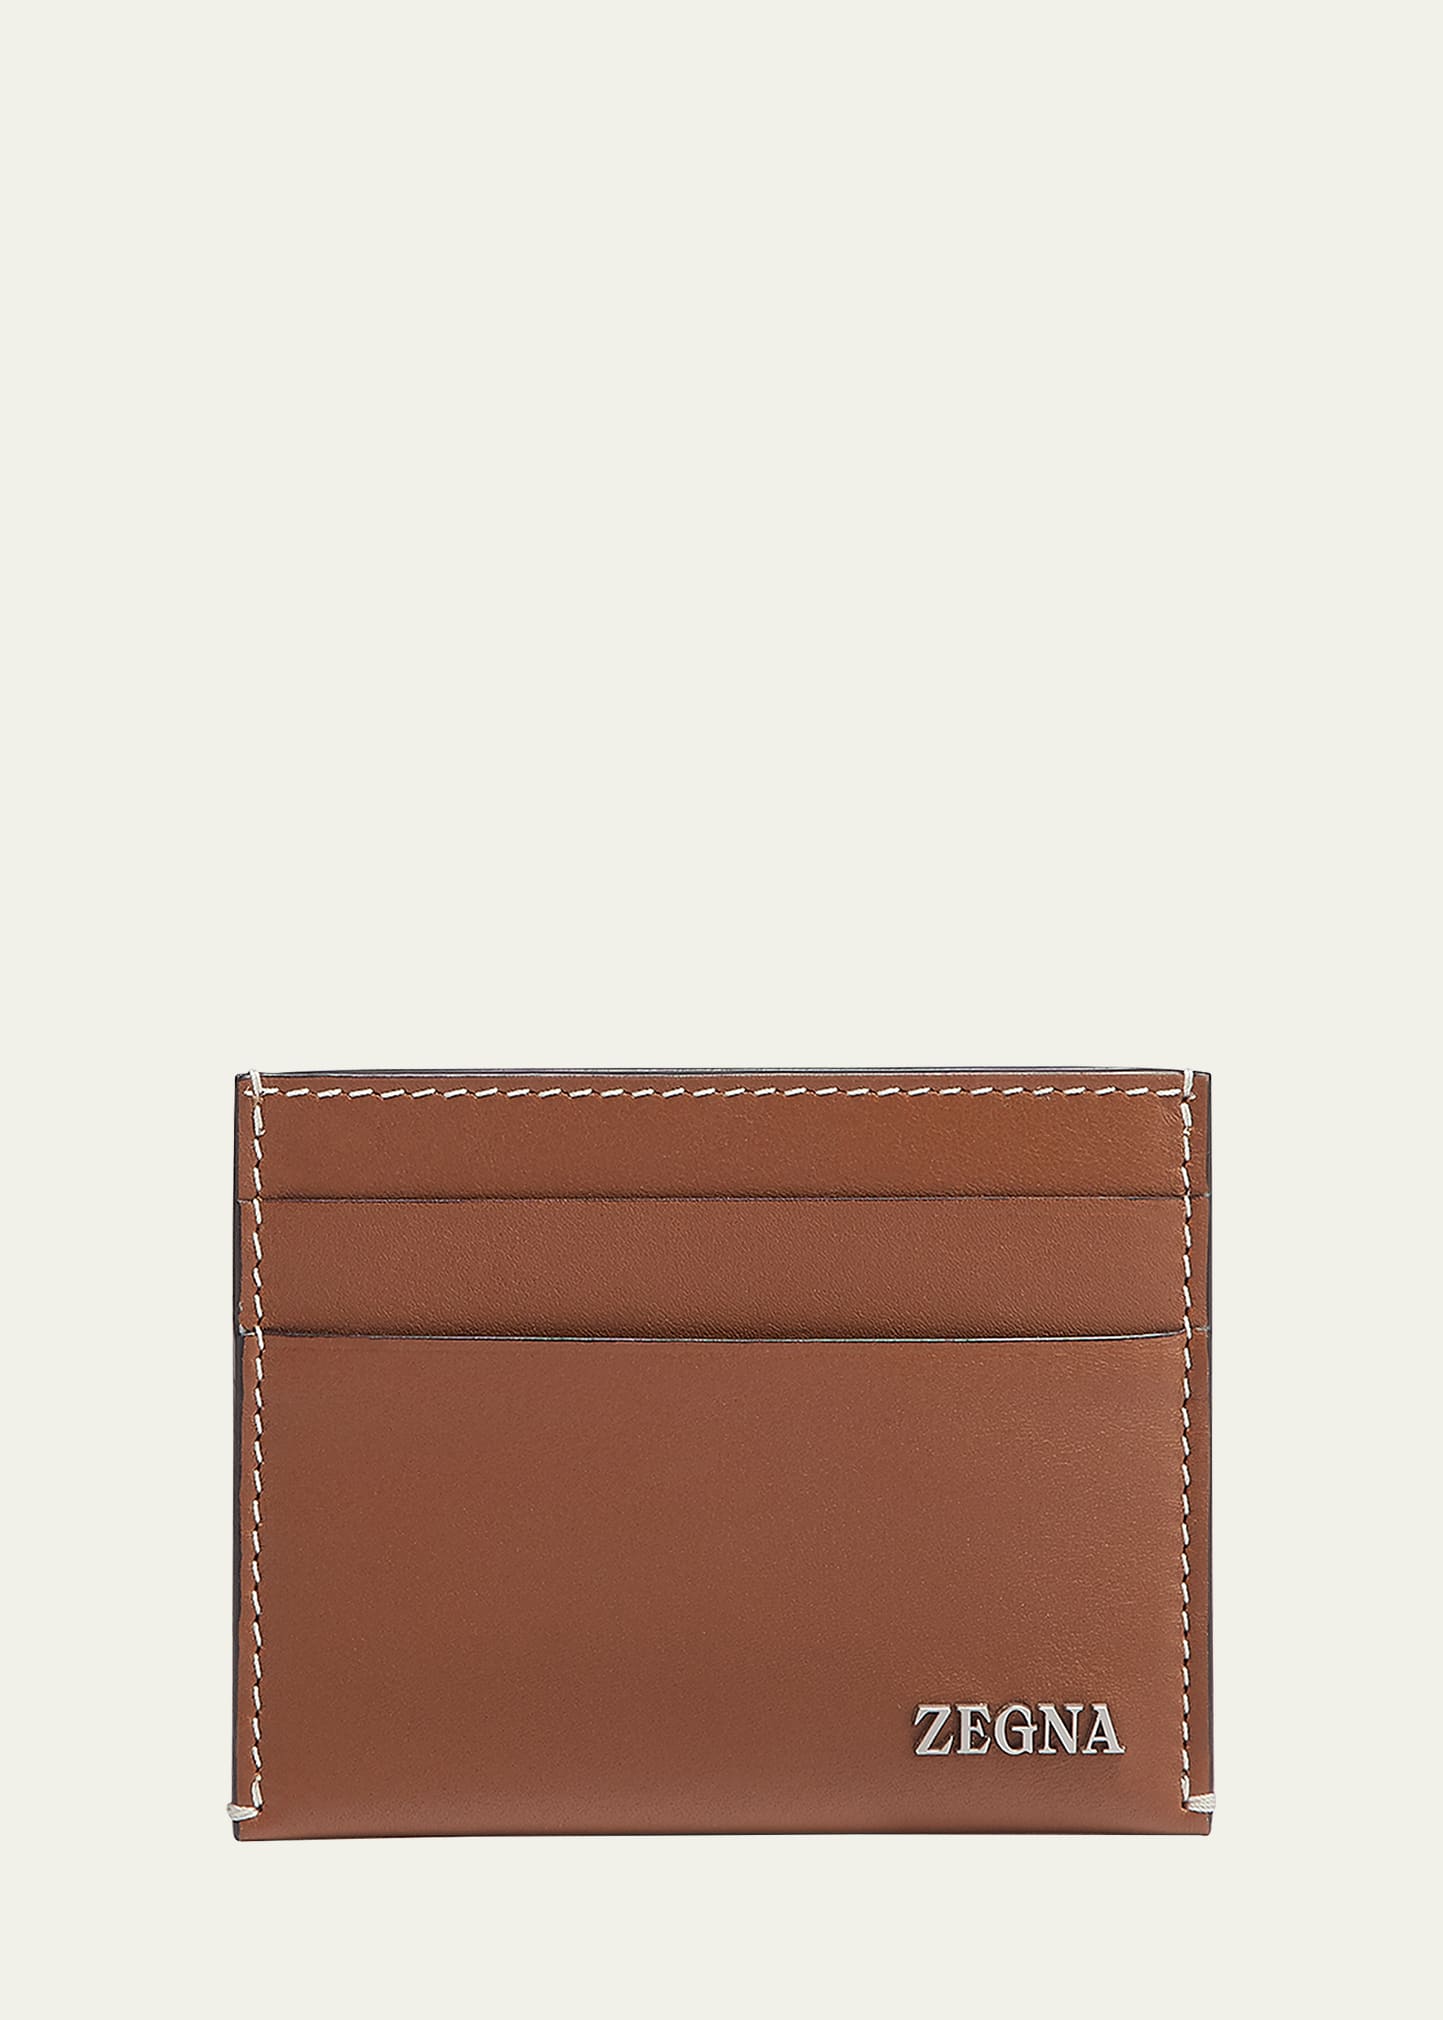 Zegna Men's Leather Card Case In Vsi